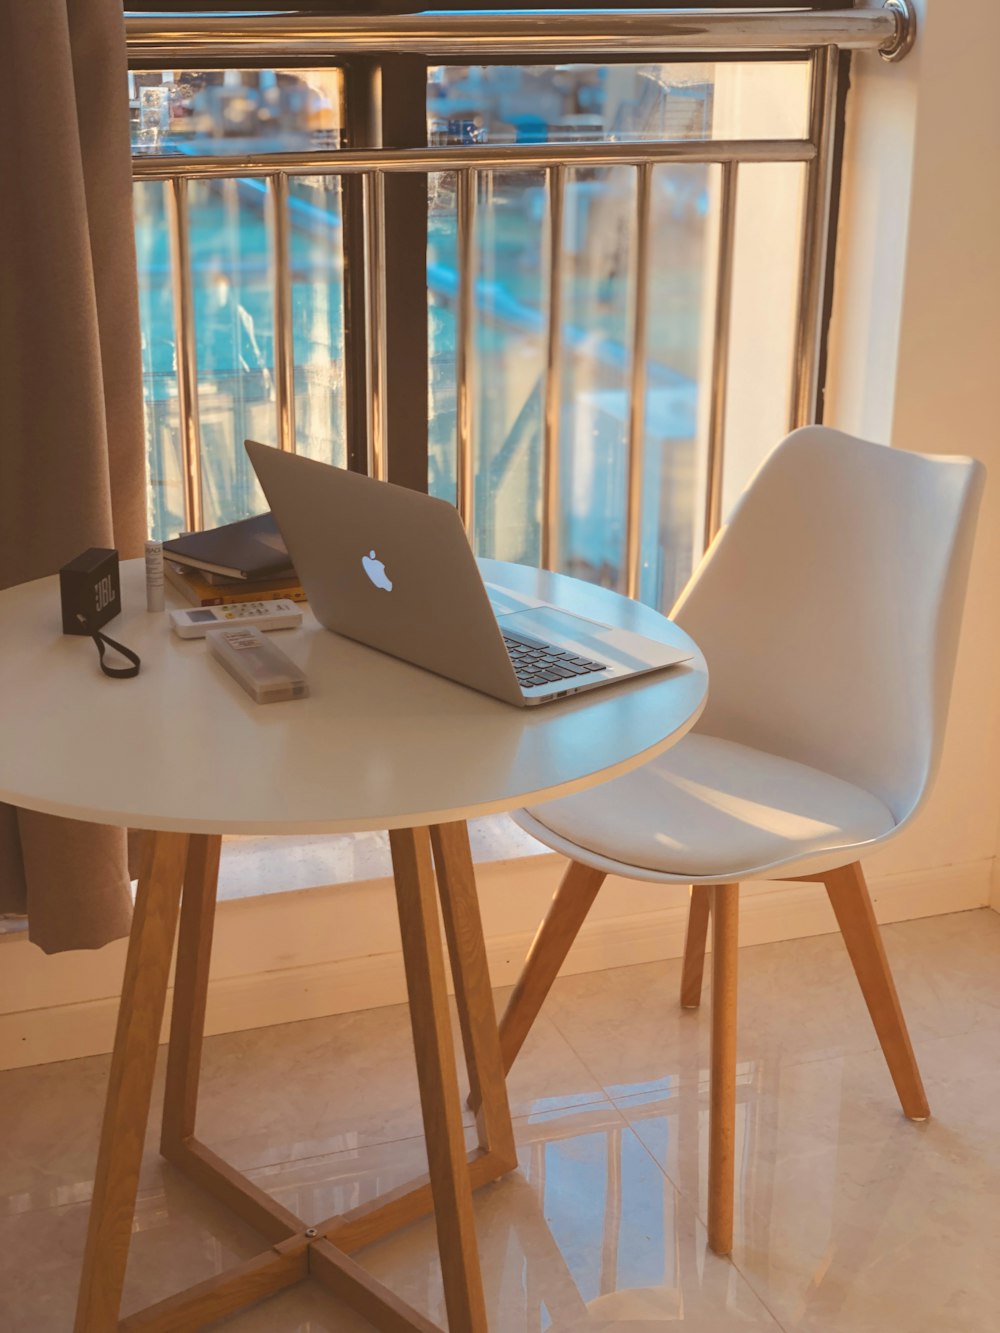 MacBook Air auf braunem Holztisch